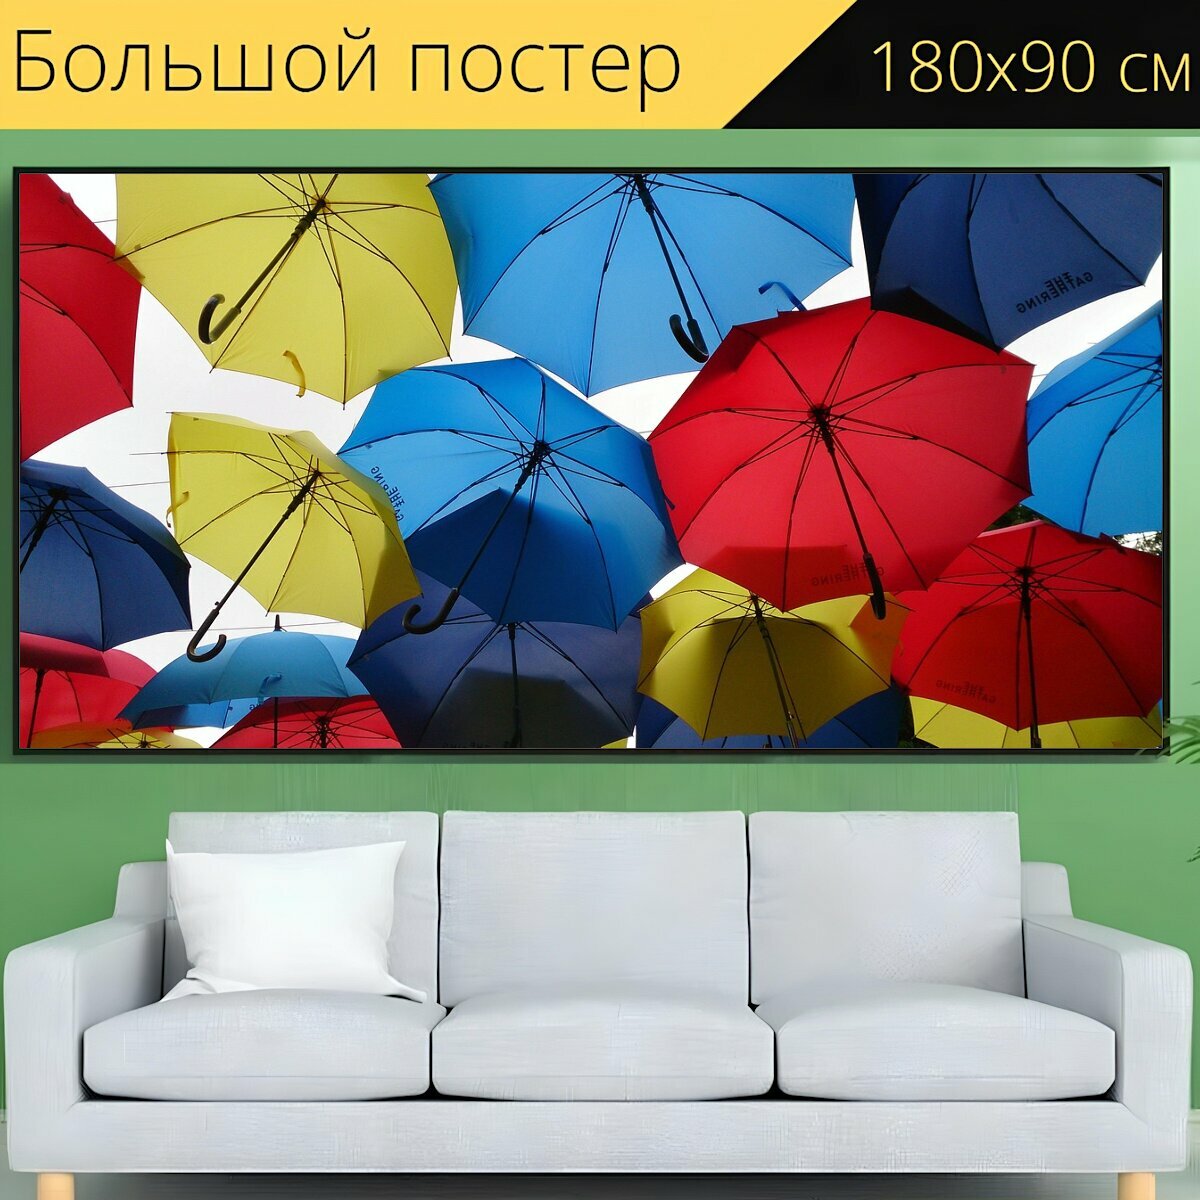 Большой постер "Зонтик, дождь, погода" 180 x 90 см. для интерьера